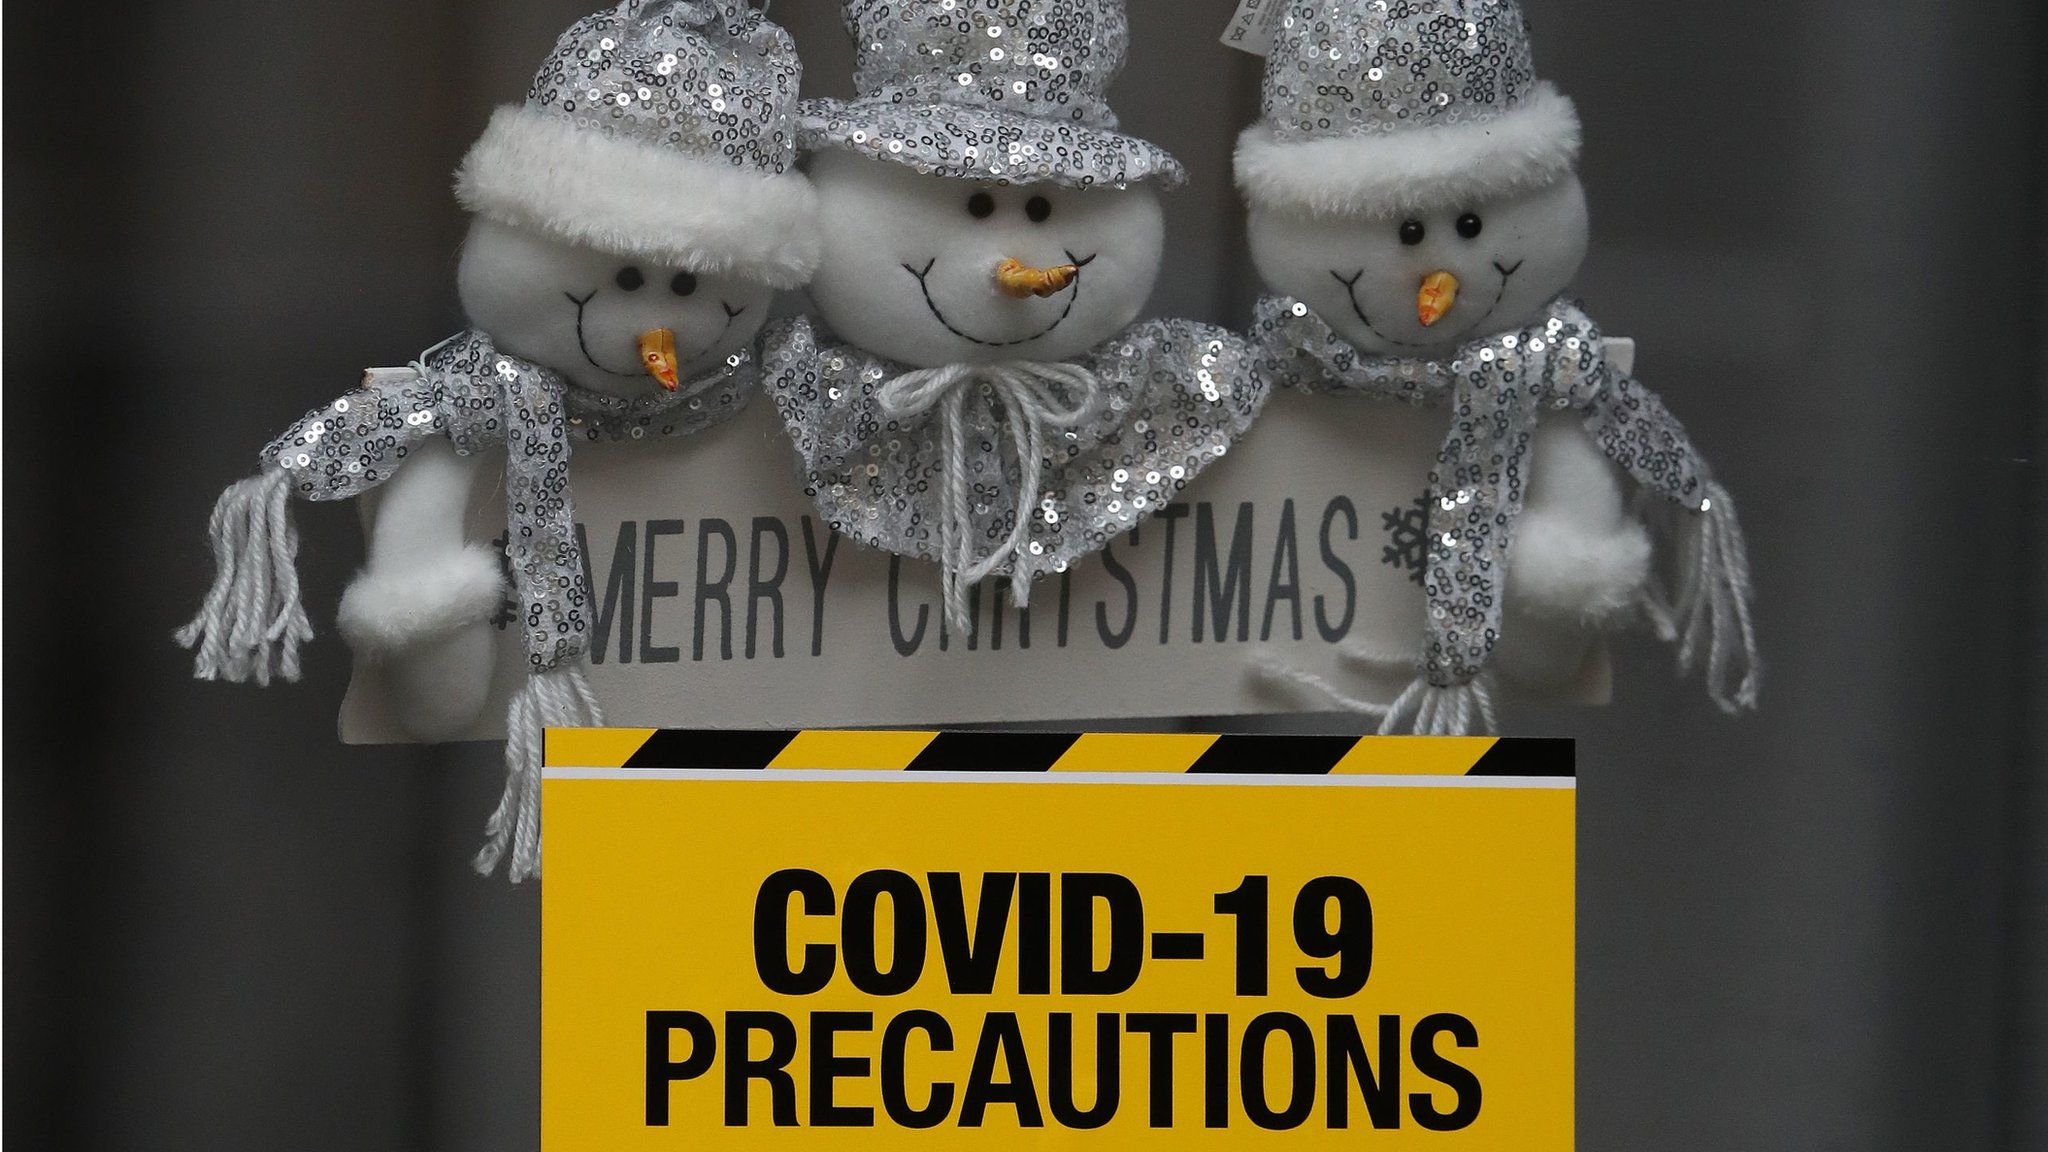 Covid-19 precautions